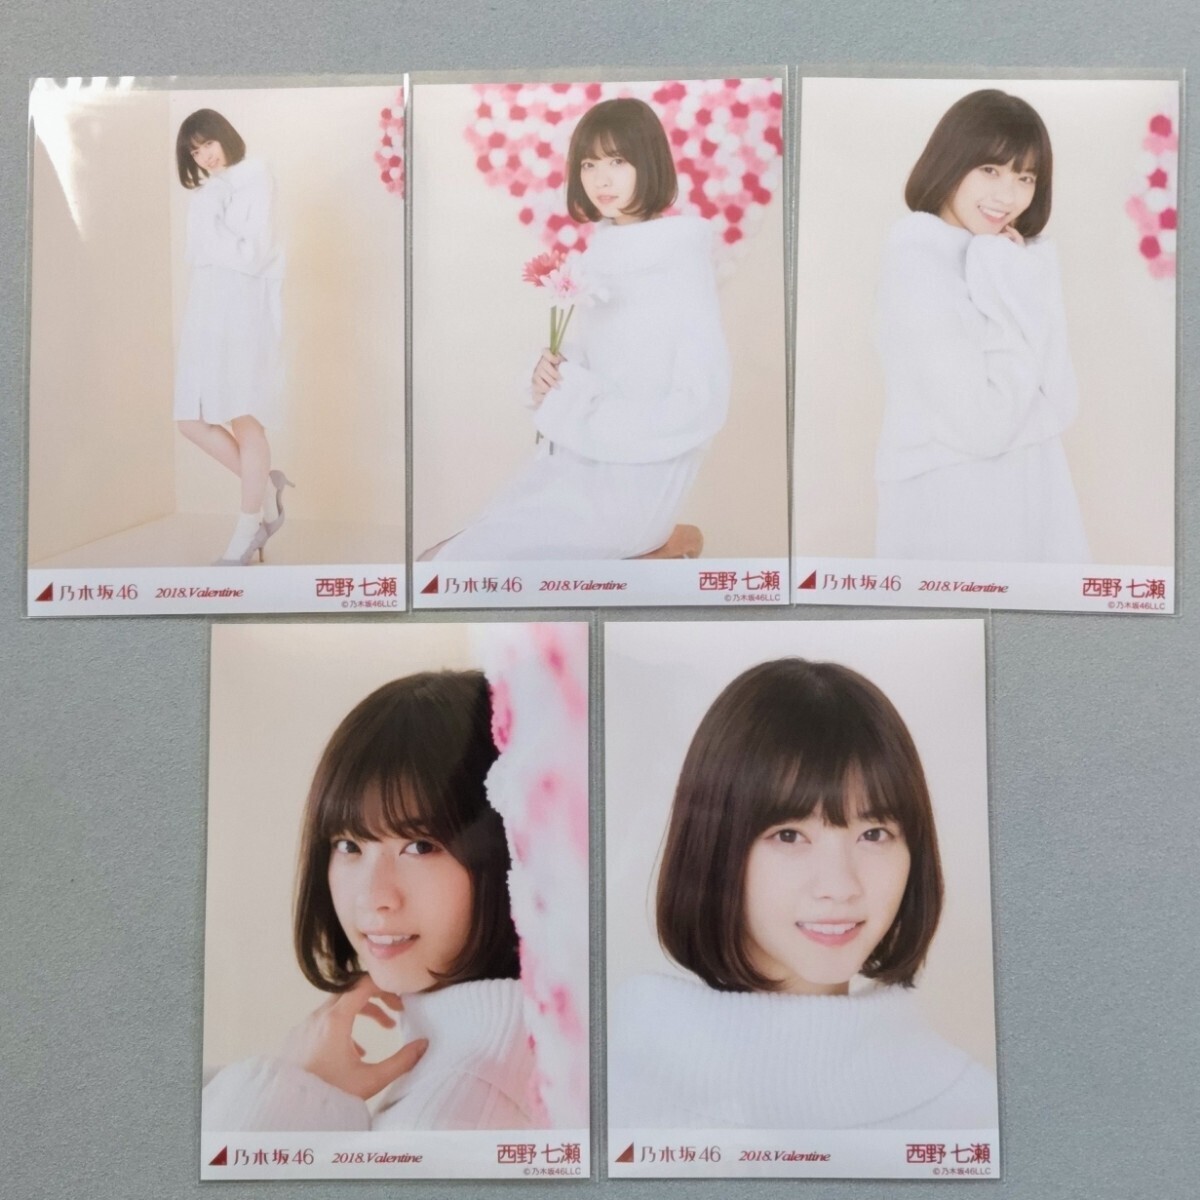 乃木坂46 西野七瀬 2018 Valentine 生写真 5枚セットの画像1